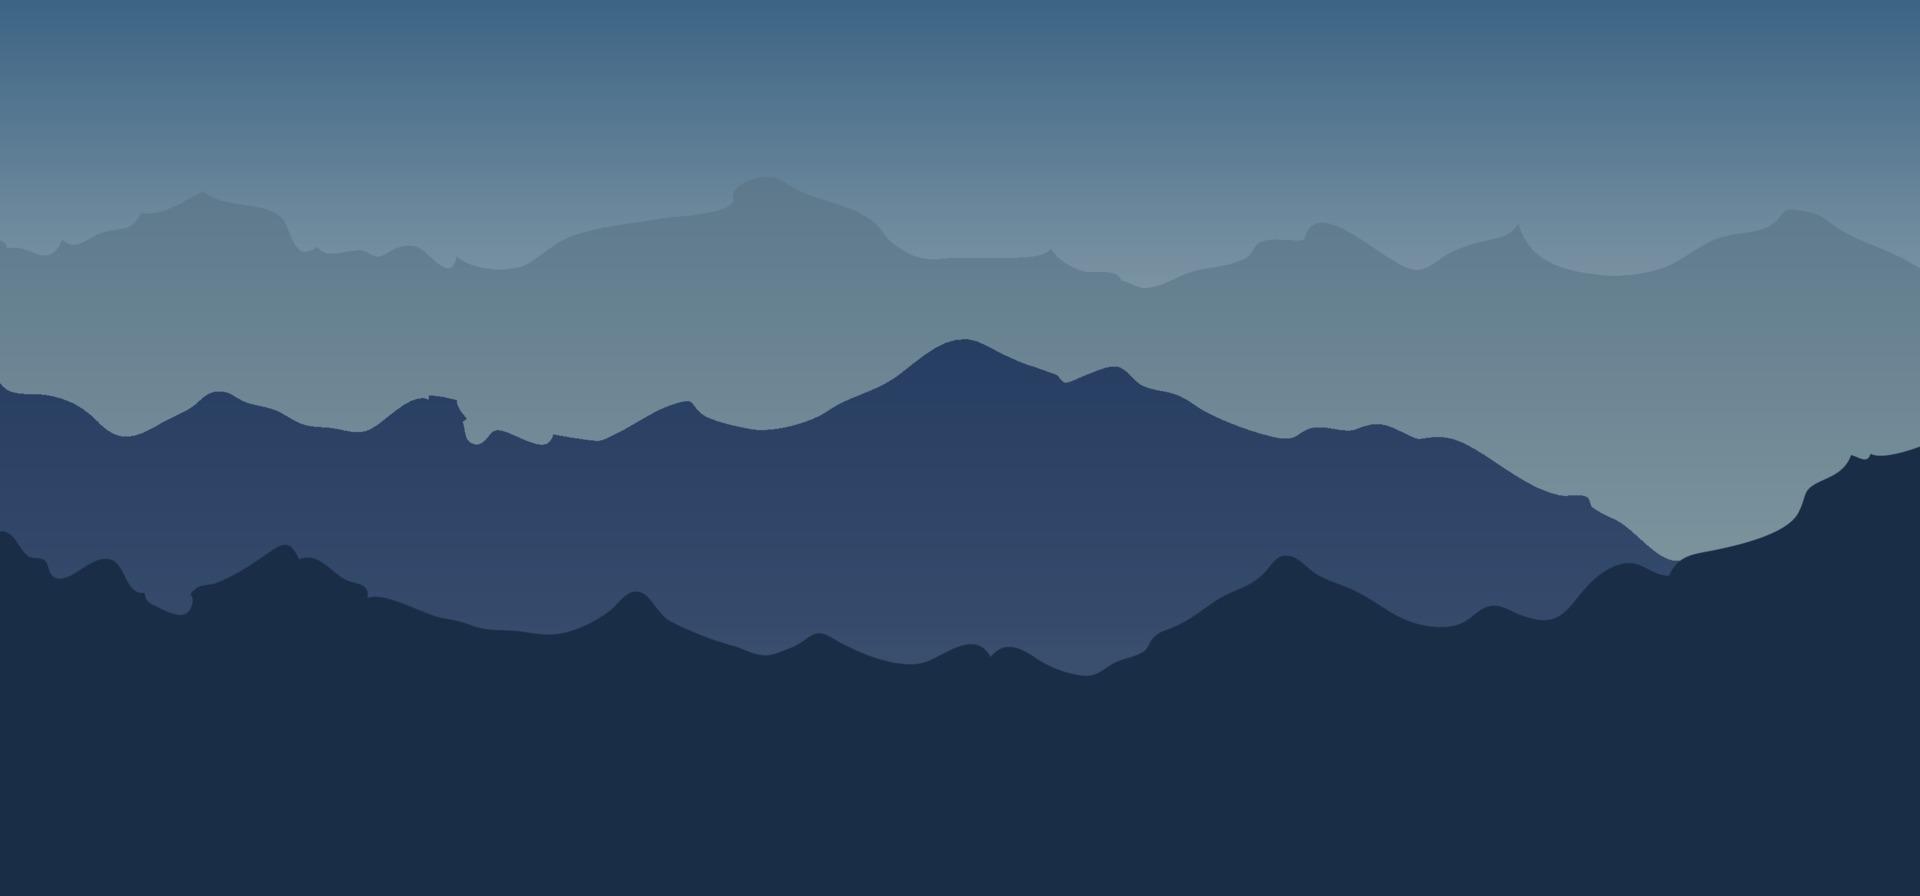 Fondo de silueta de tono azul de vista de paisaje de montaña. vector